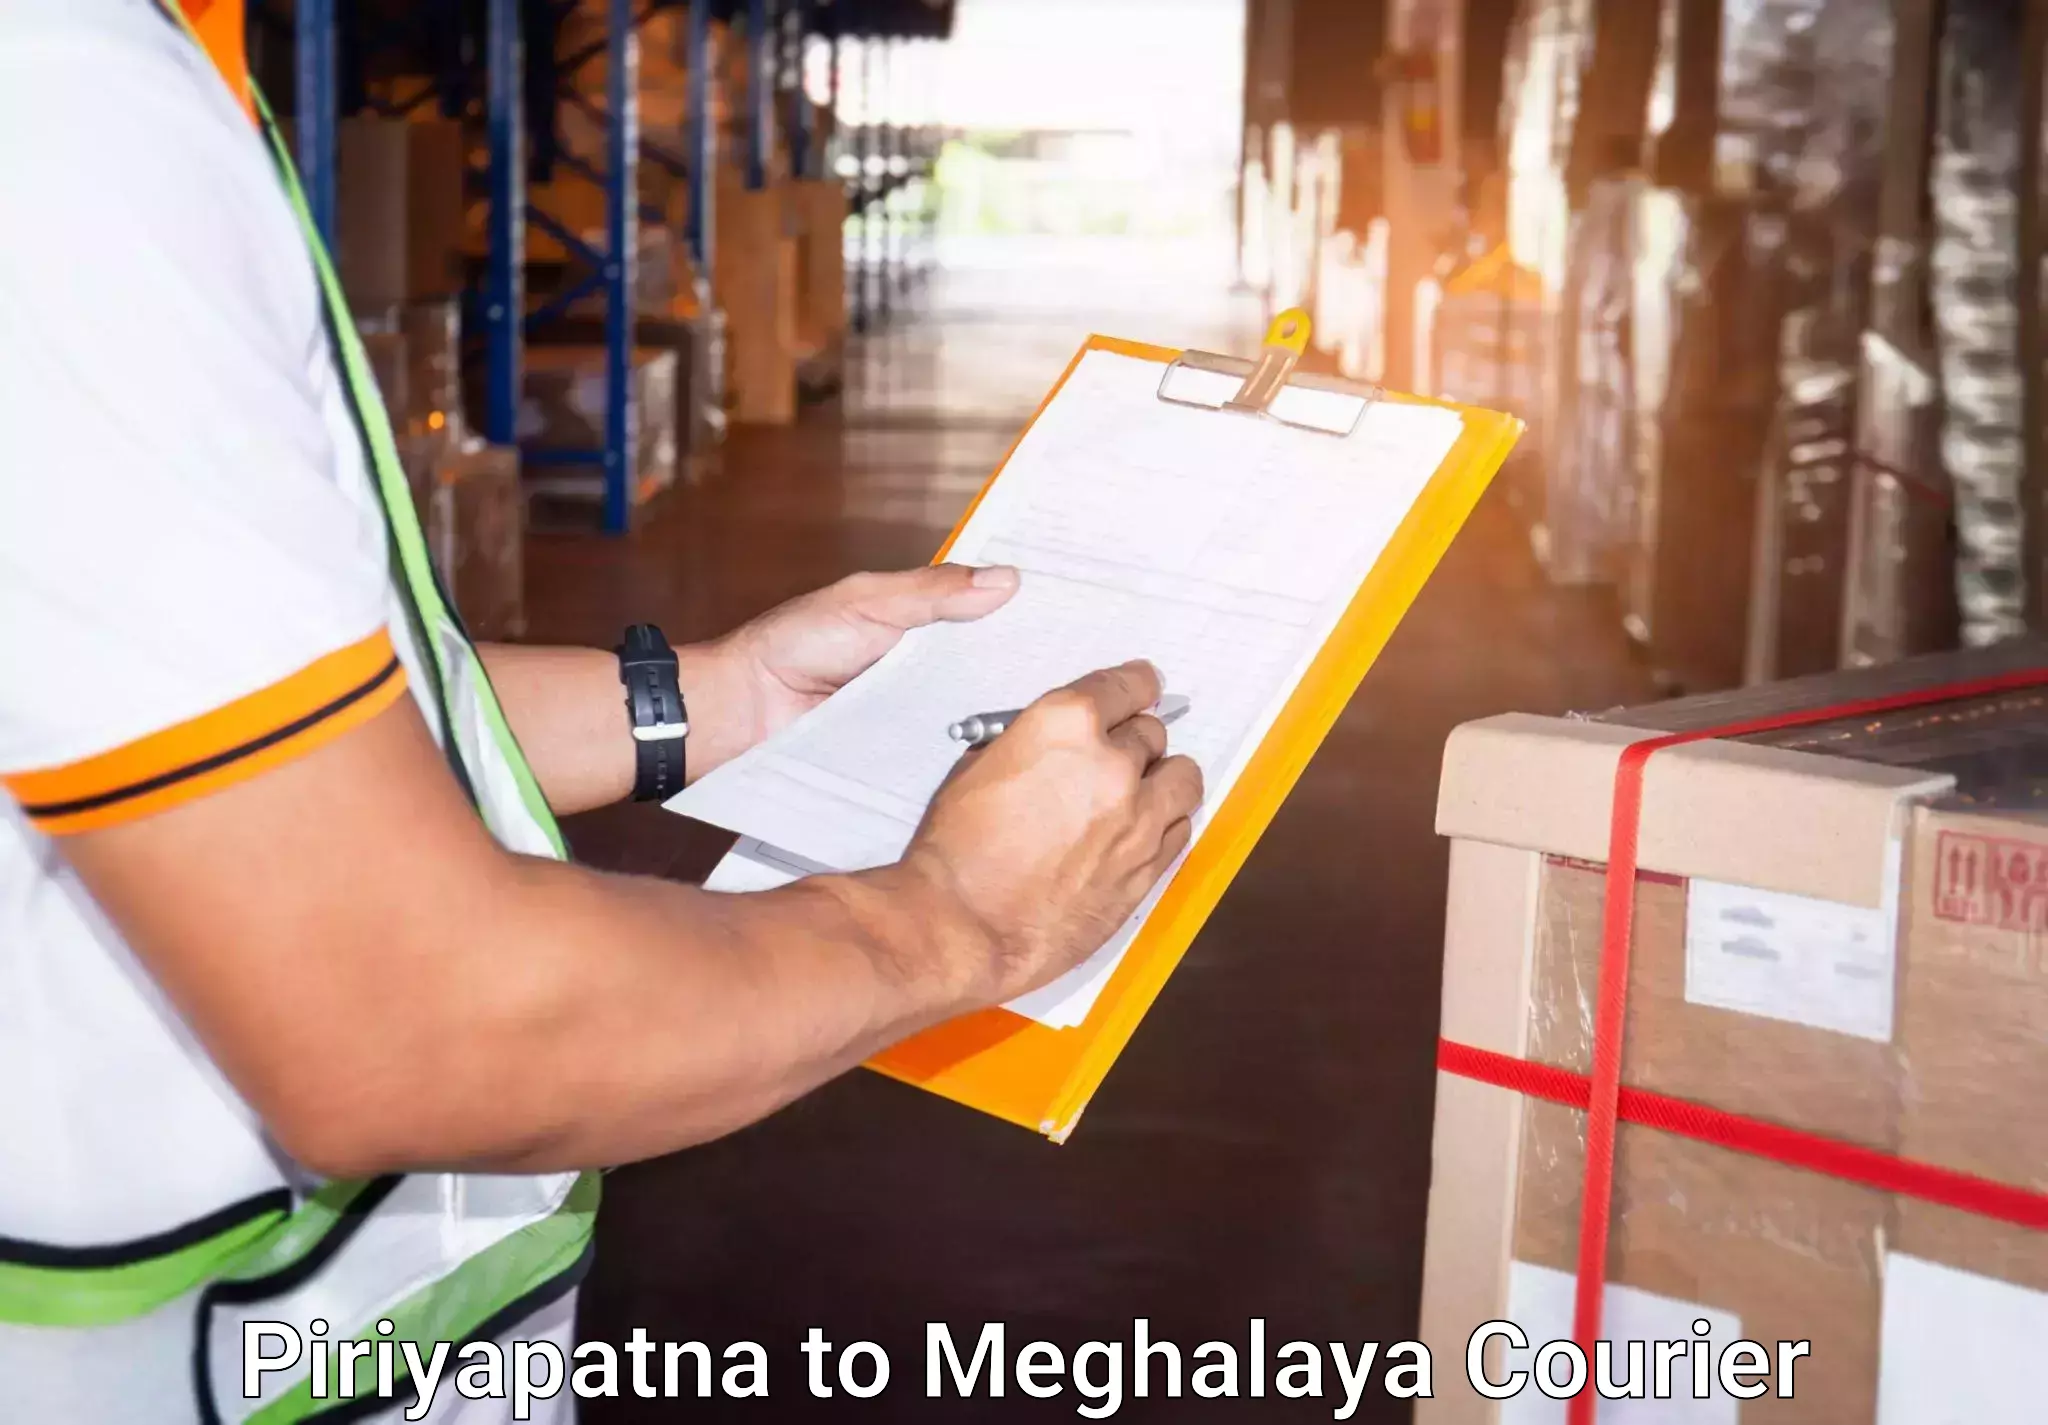 Baggage transport professionals Piriyapatna to Meghalaya